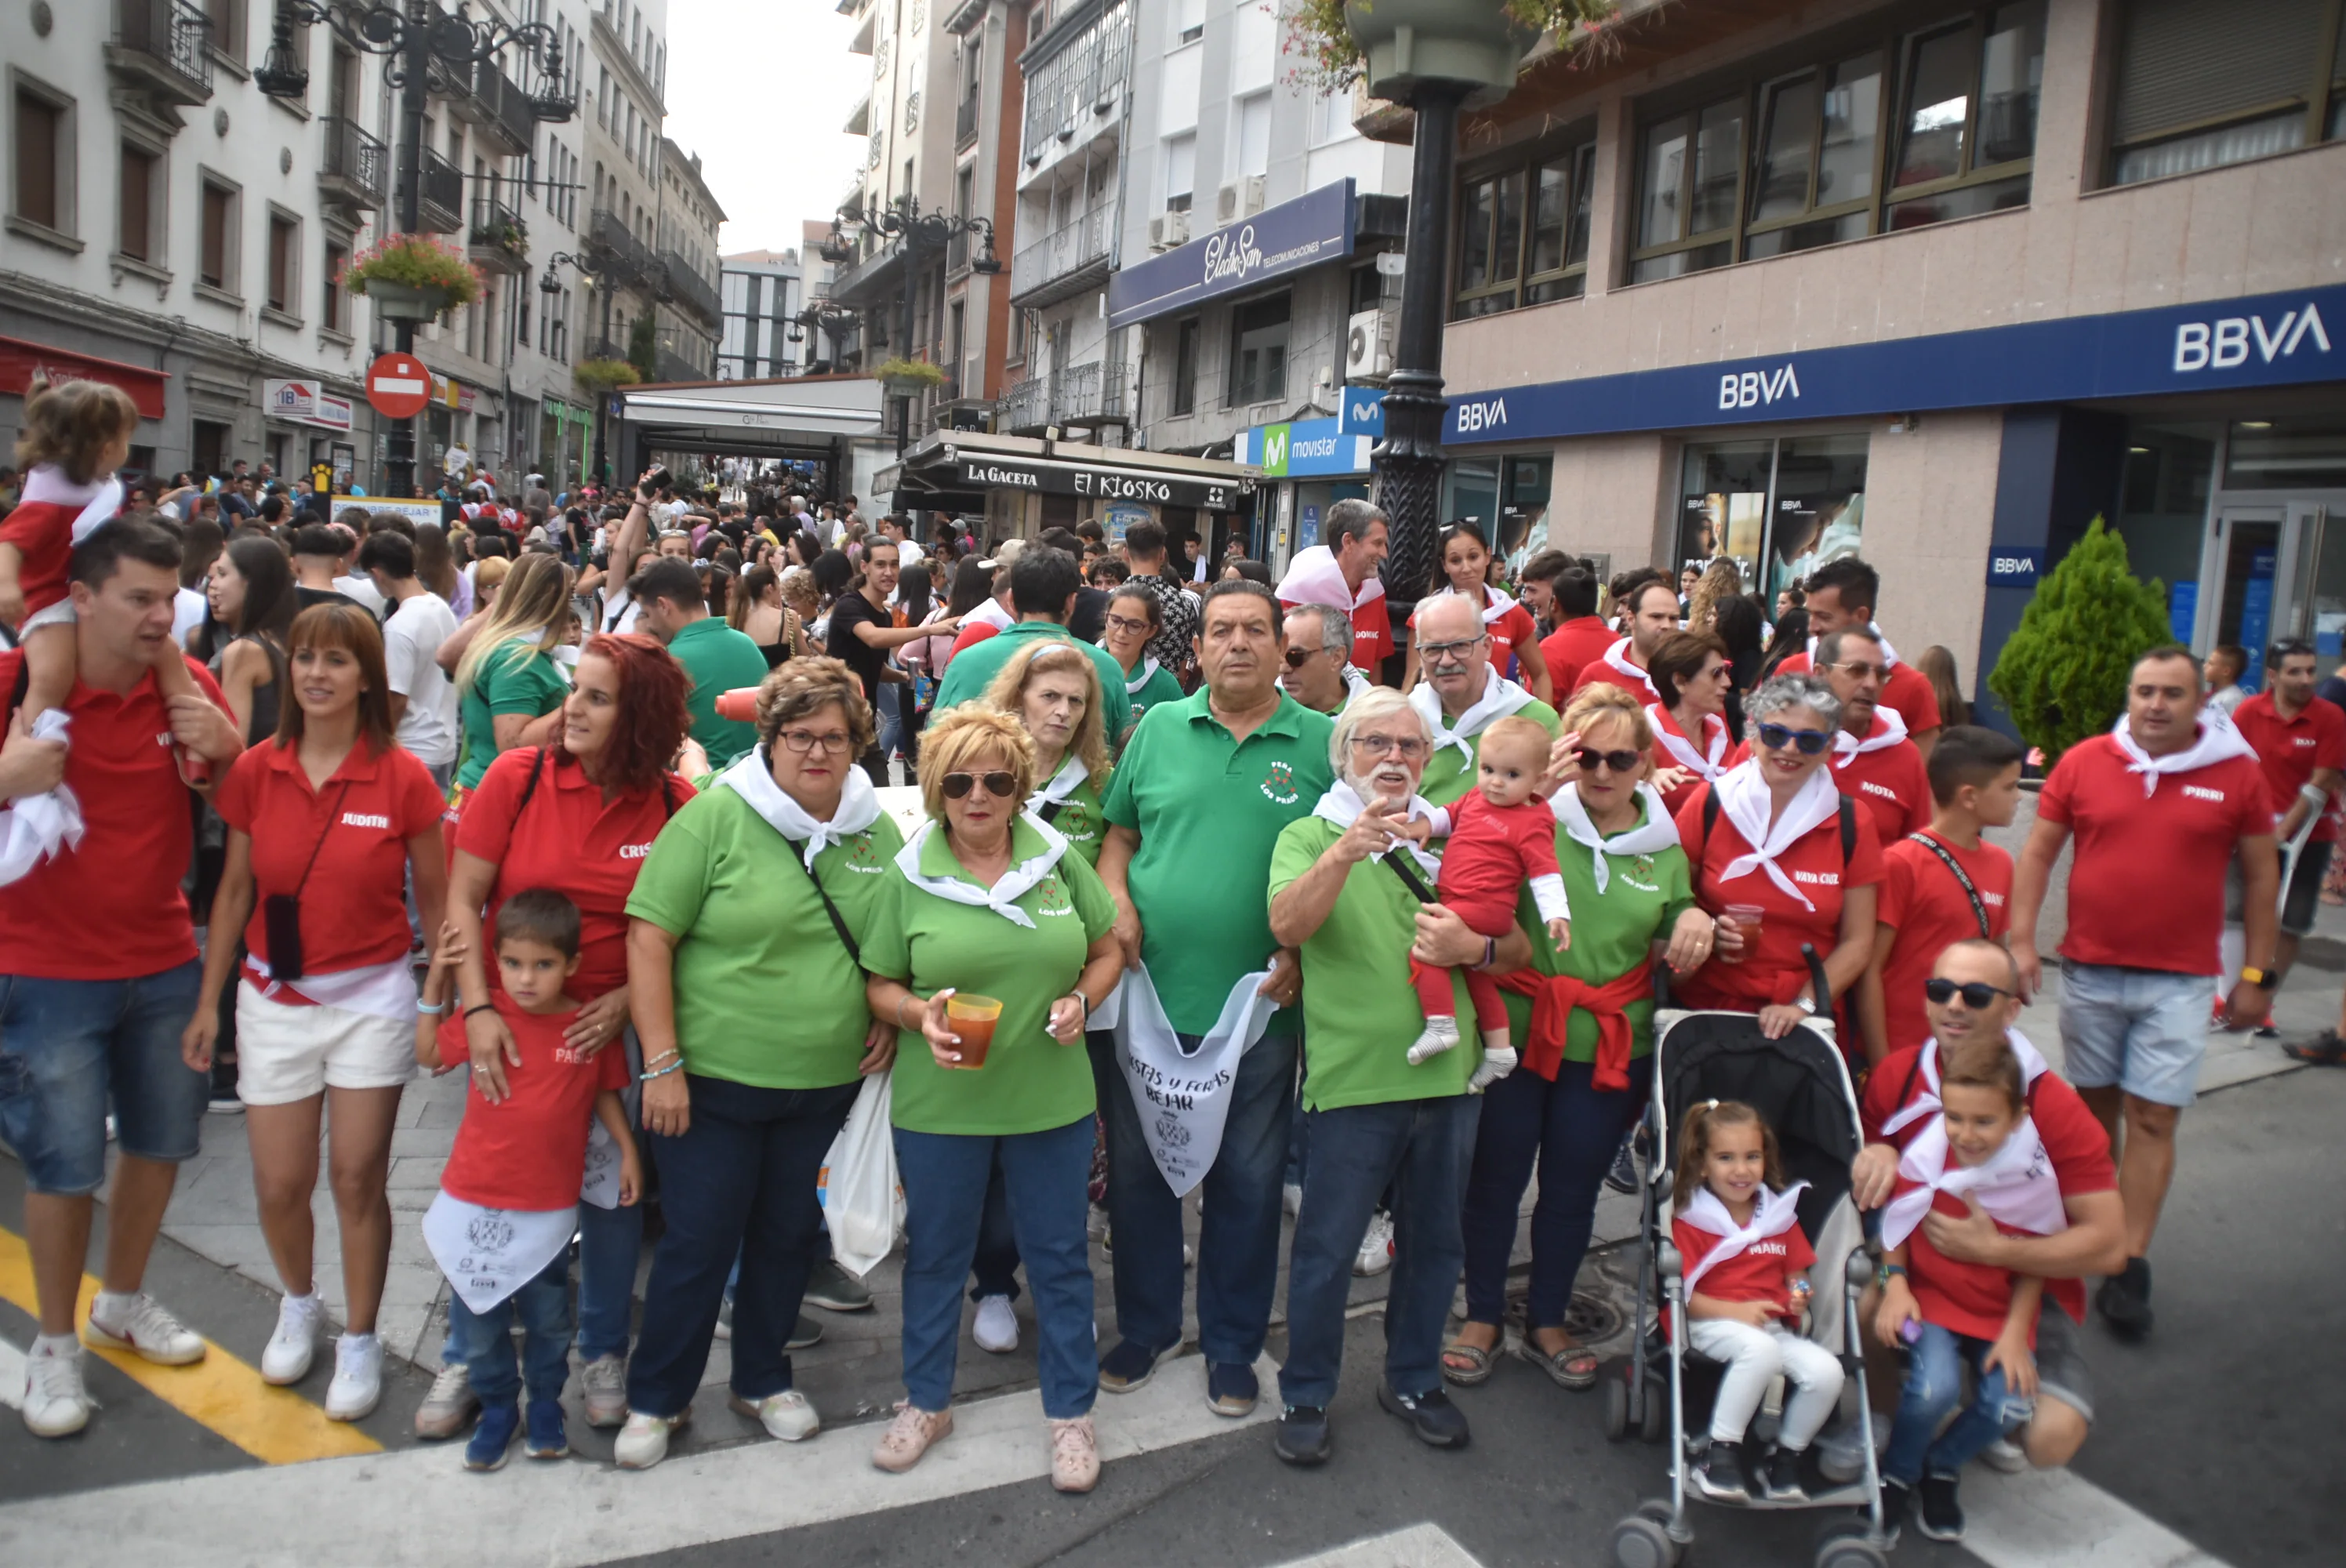 Lleno en las calles de Béjar para inaugurar las fiestas patronales